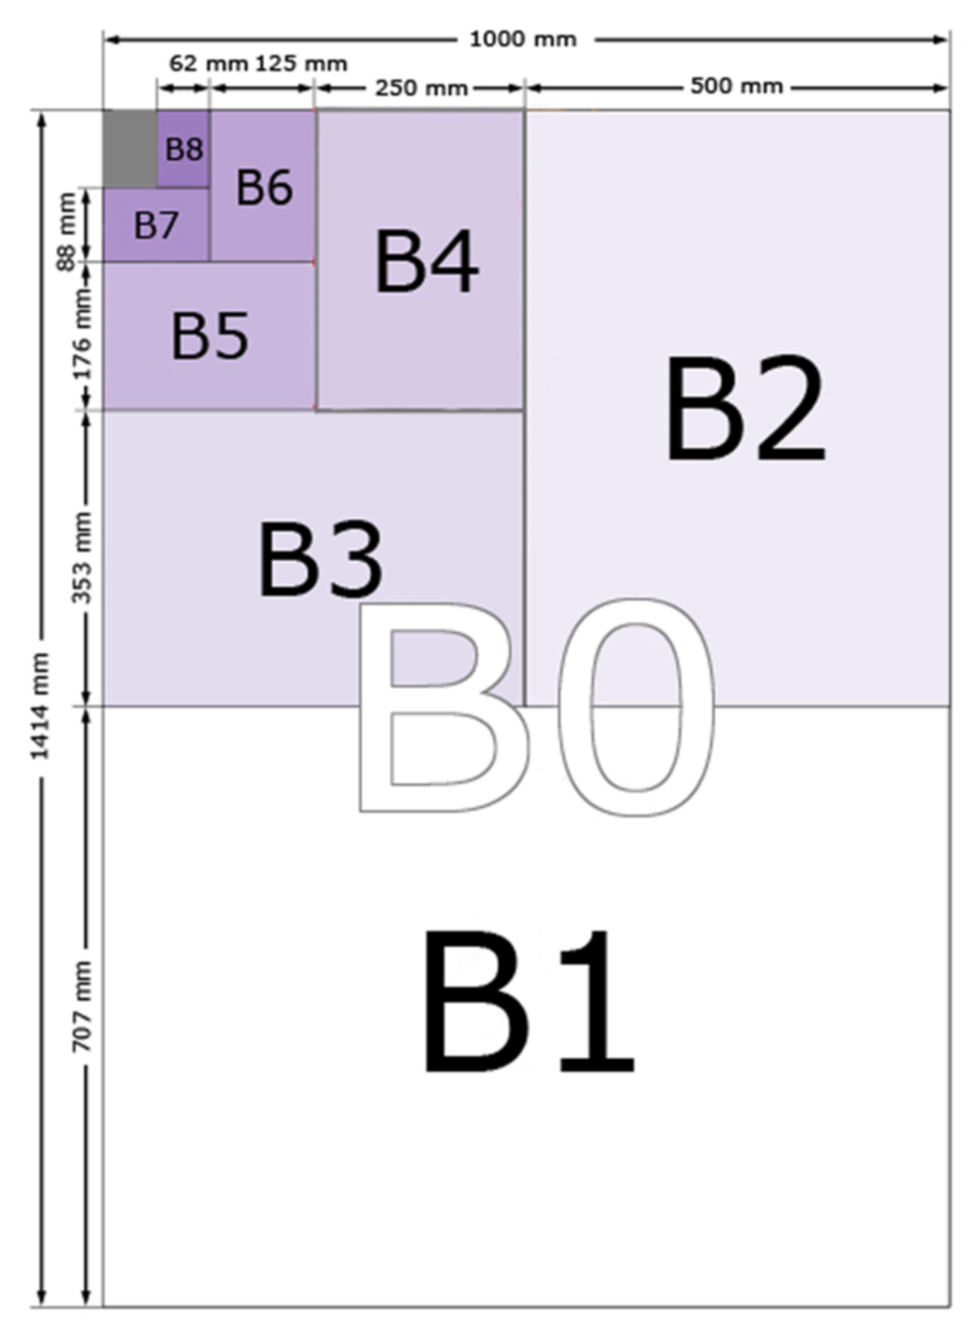 Diagramm der B-Papiergrößen und ihrer Beziehungen